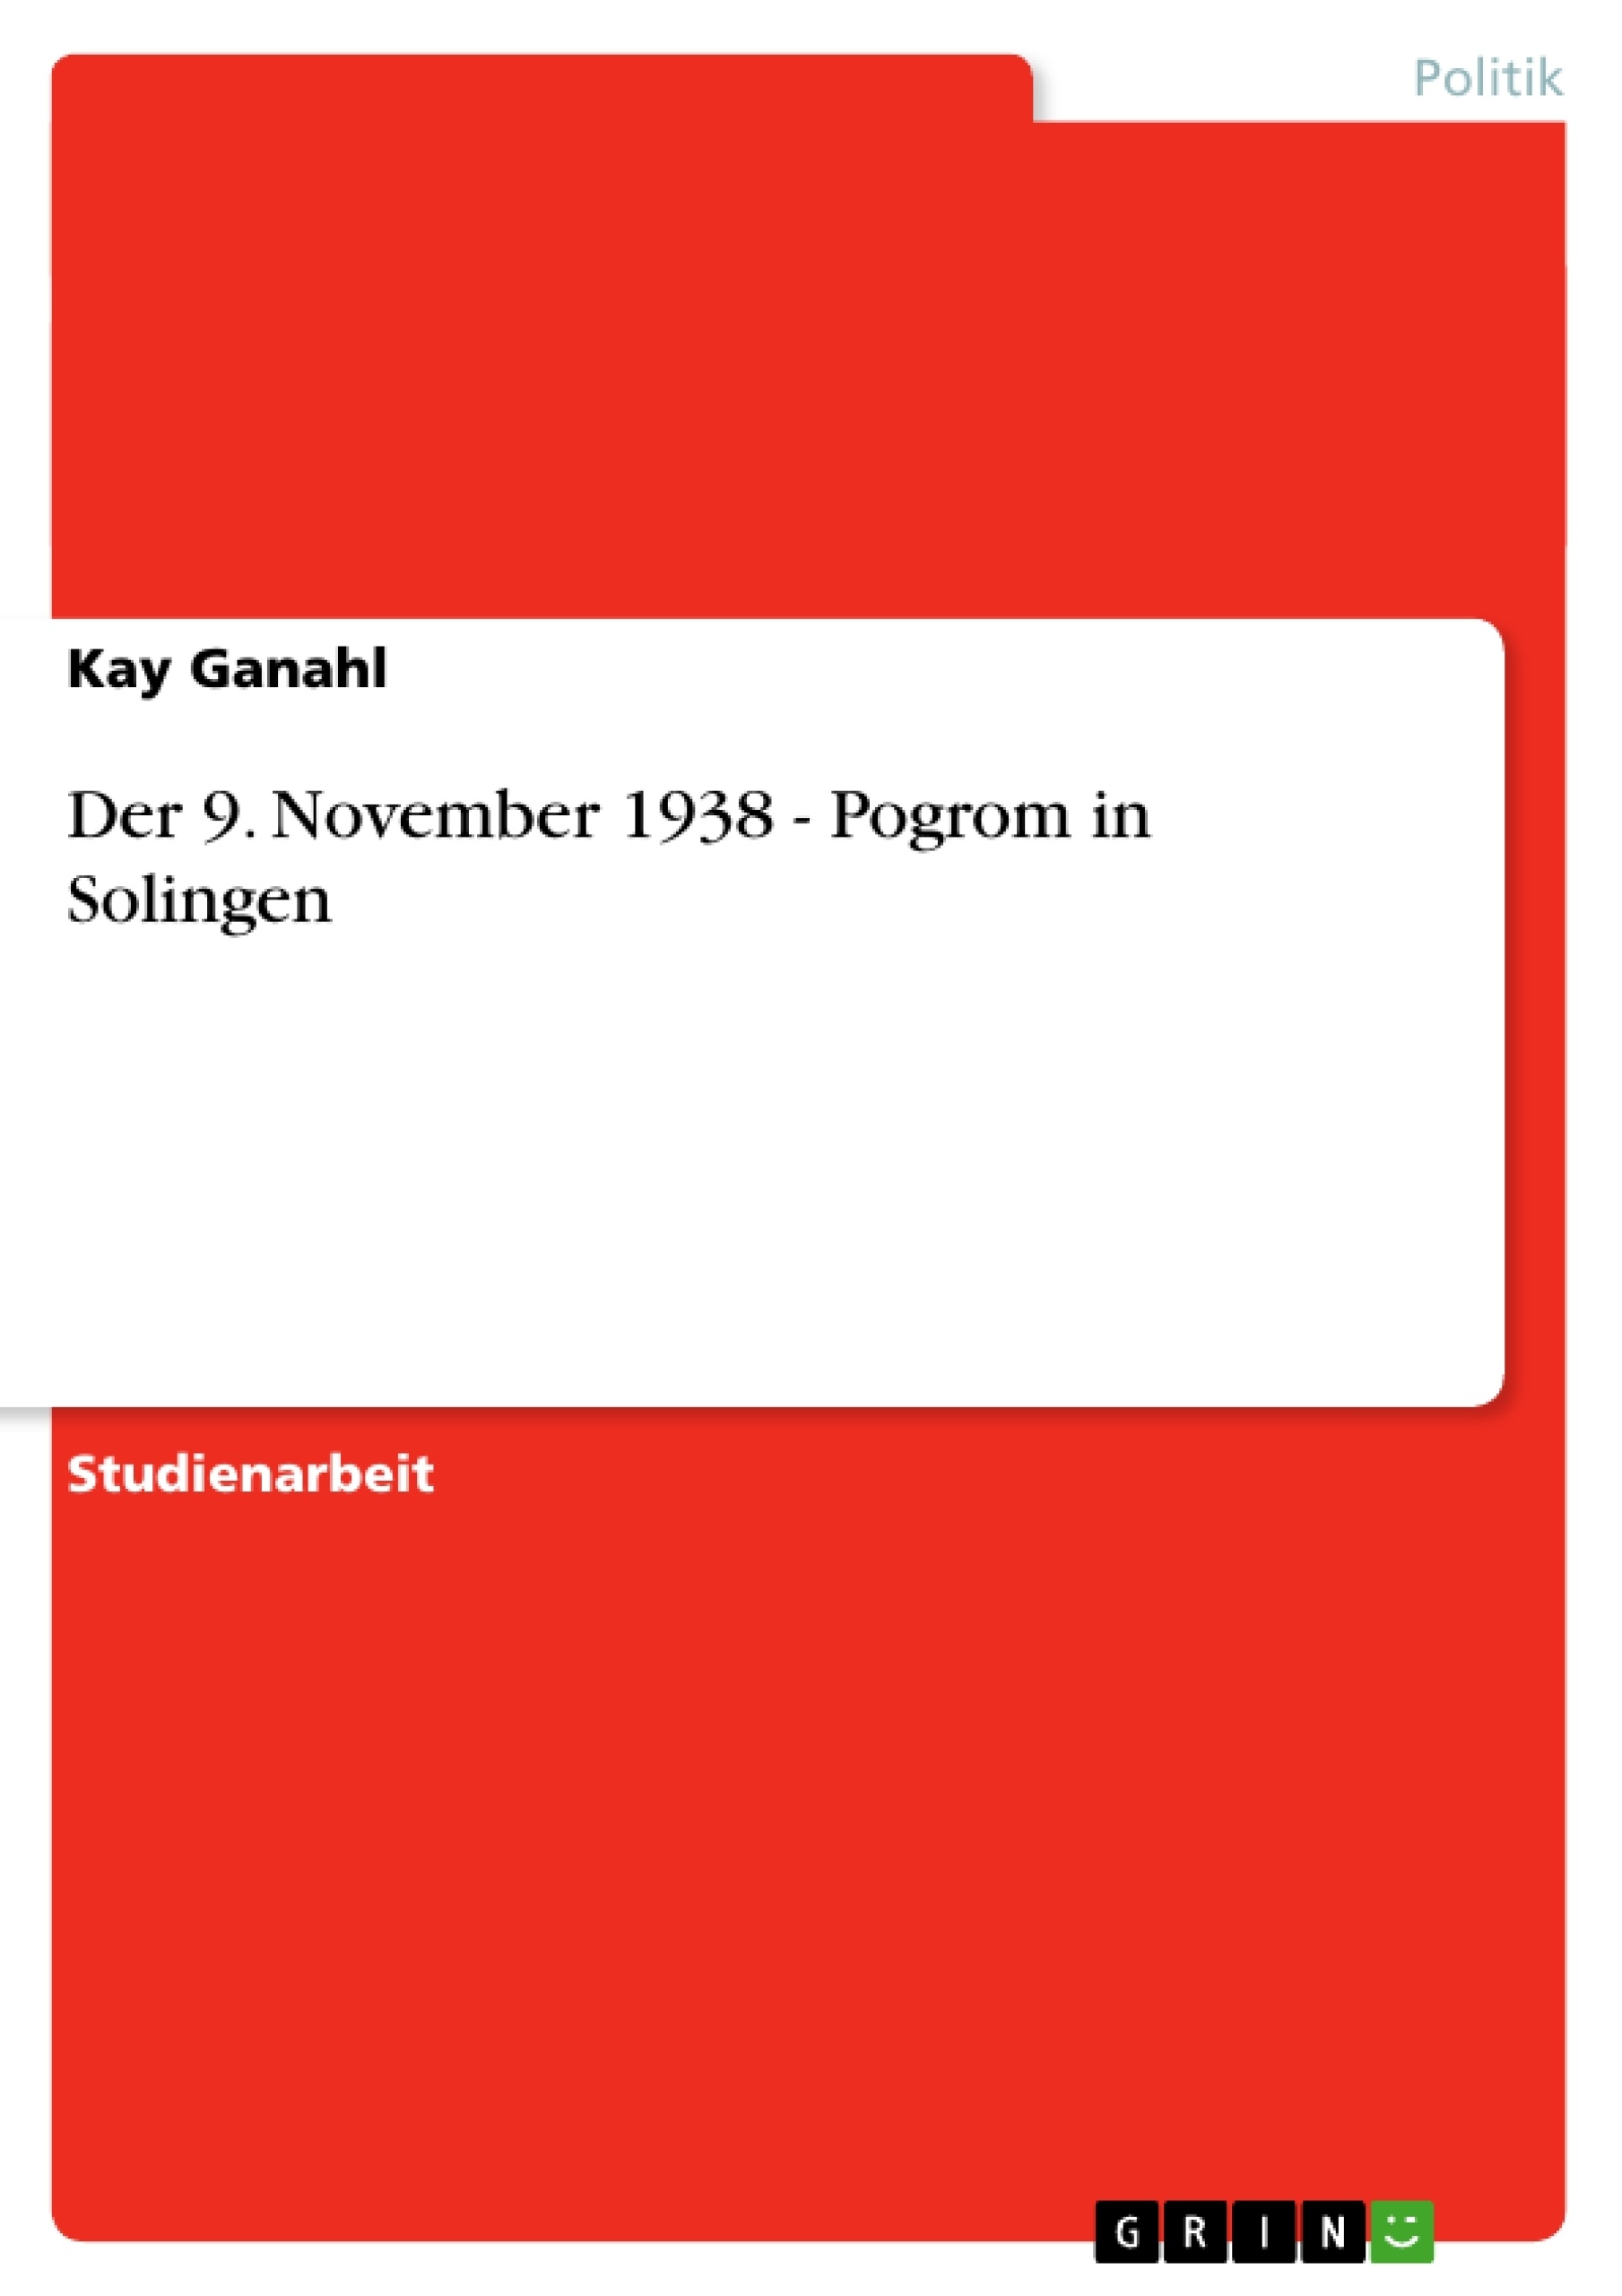 Title: Der 9. November 1938 - Pogrom in Solingen